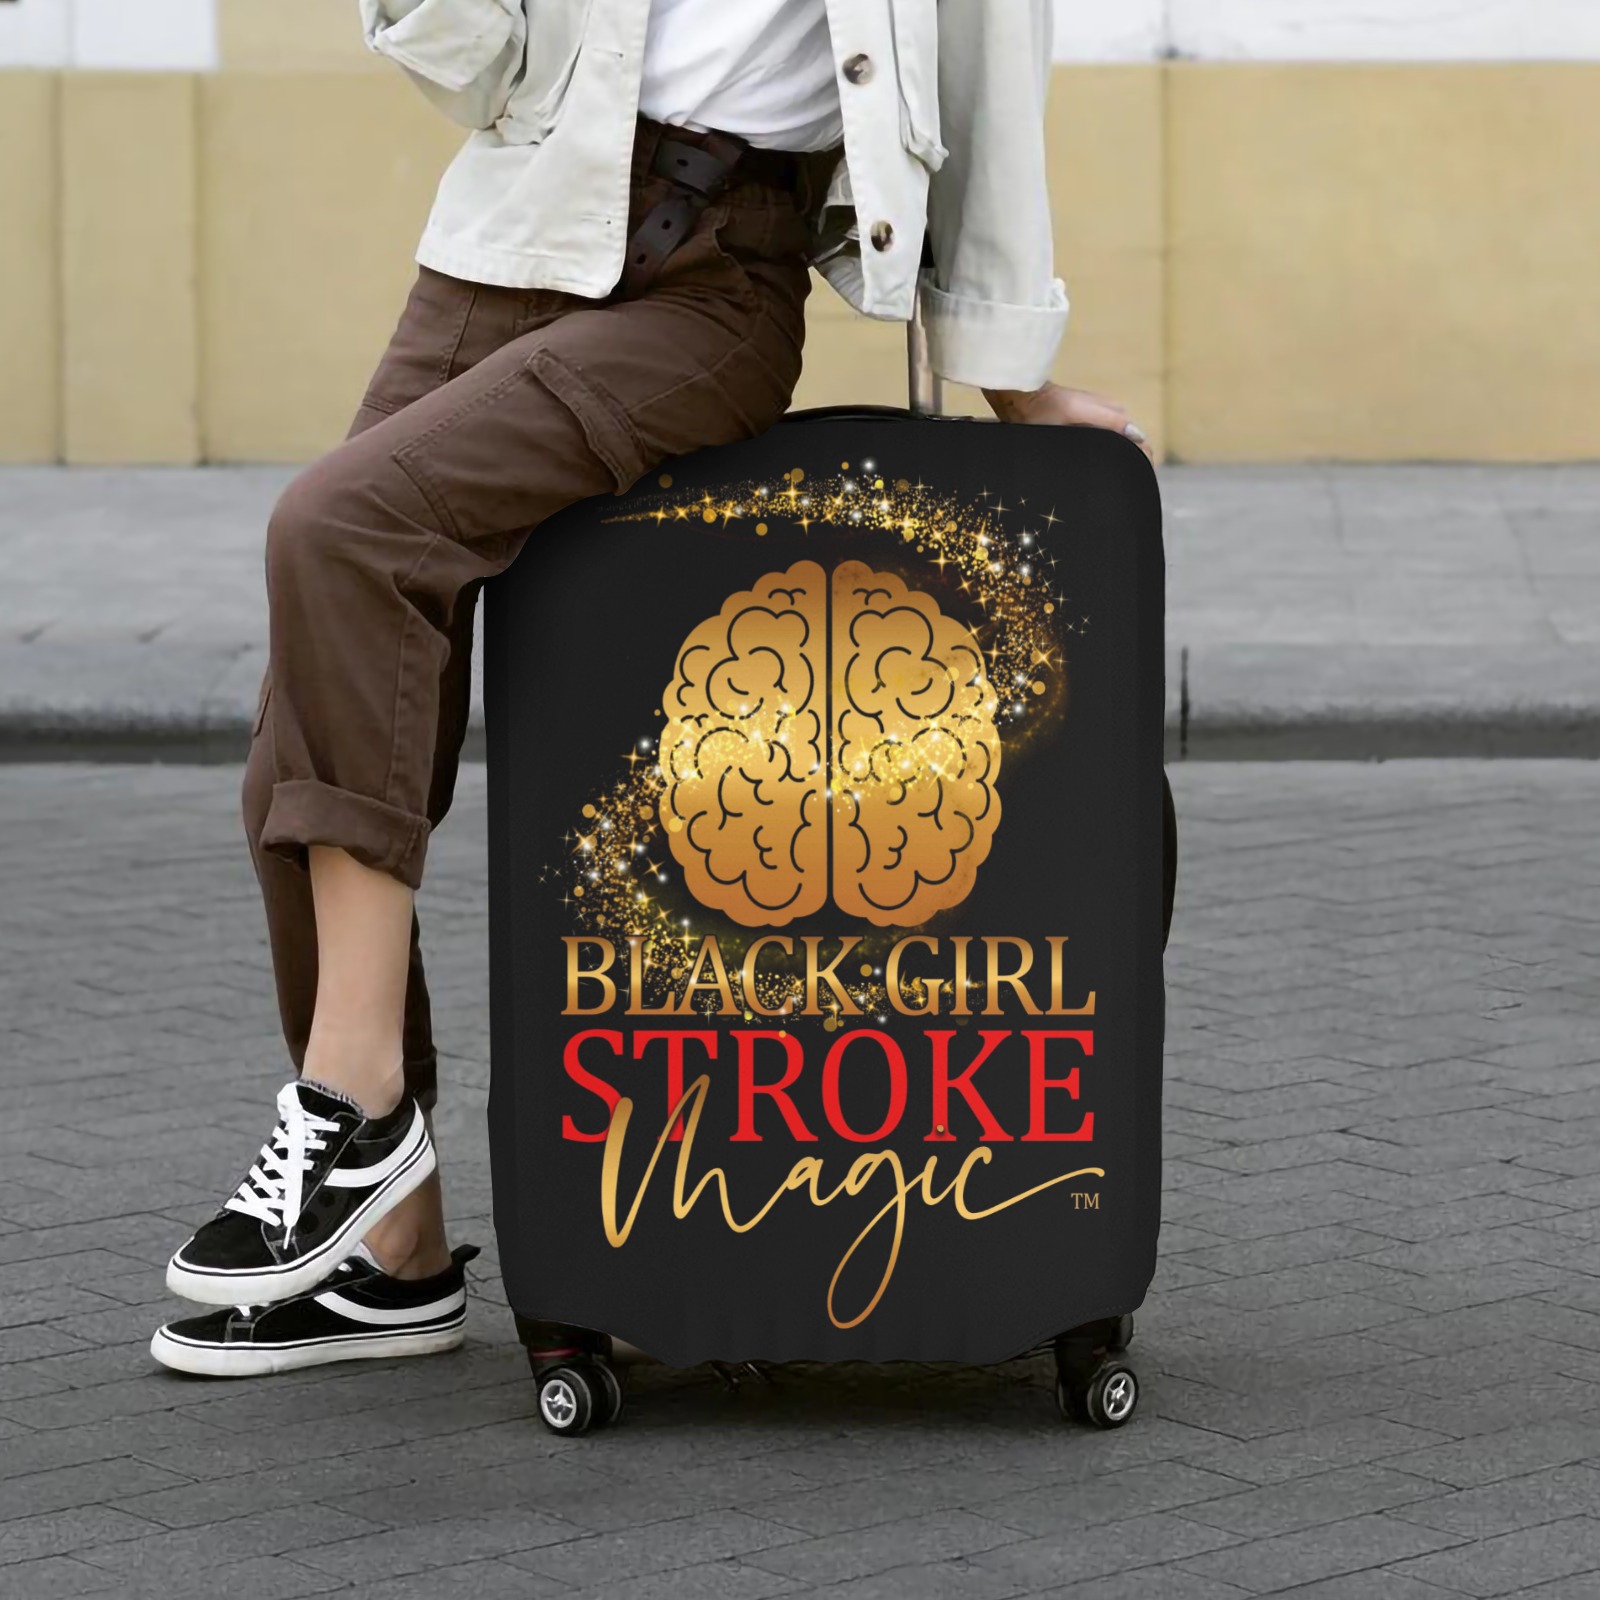 Black Girl Stroke Magic Logo Black XL Luggage Luggage Cover/Extra Large 28"-30"